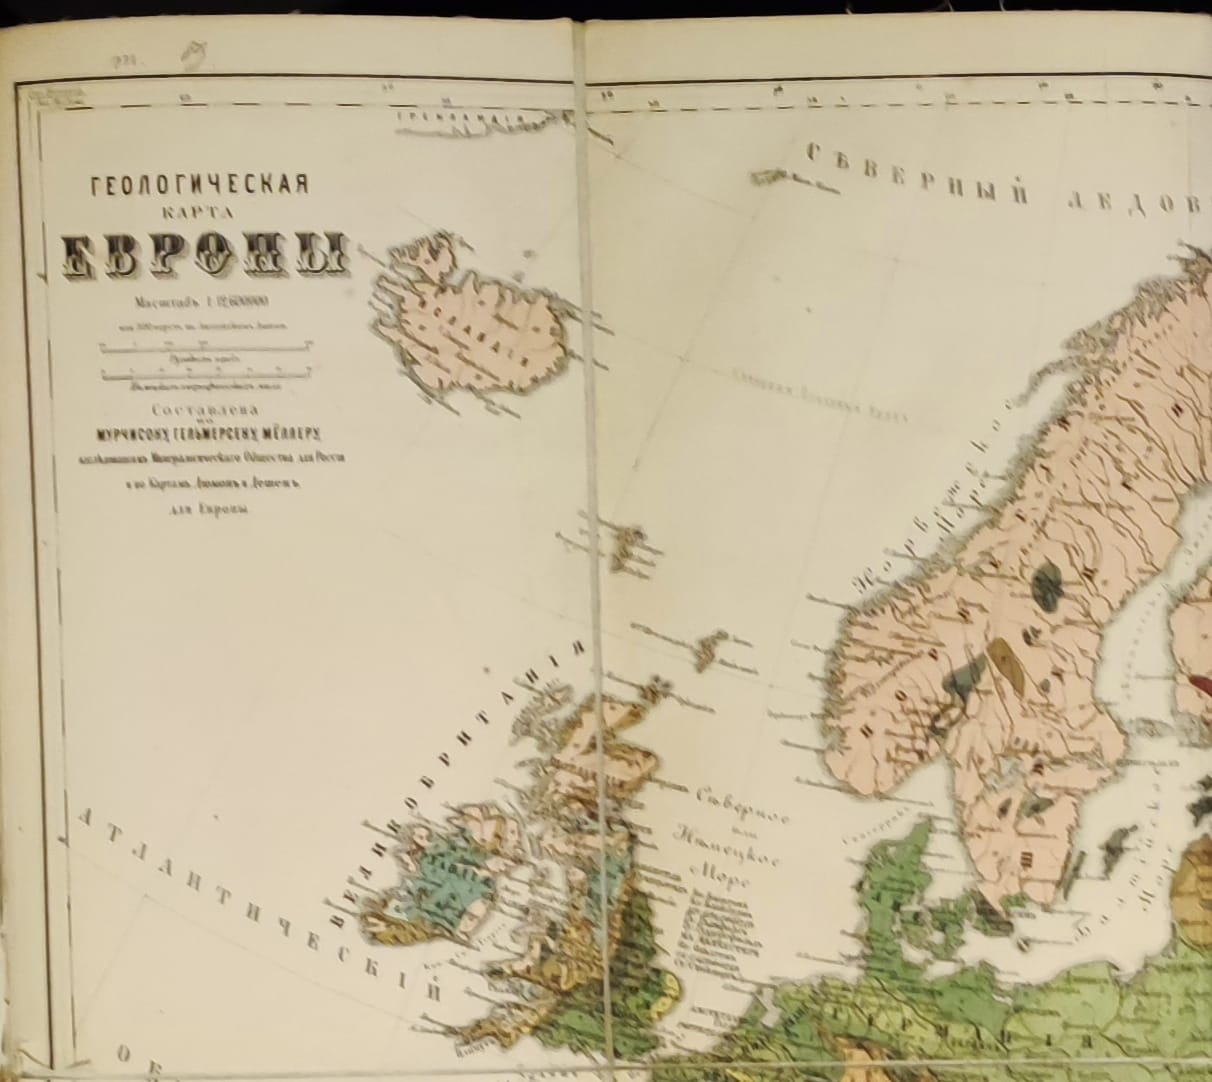 Геологическая карта Европы на холсте, картографическая мастерская  Ильина, царская Россия 